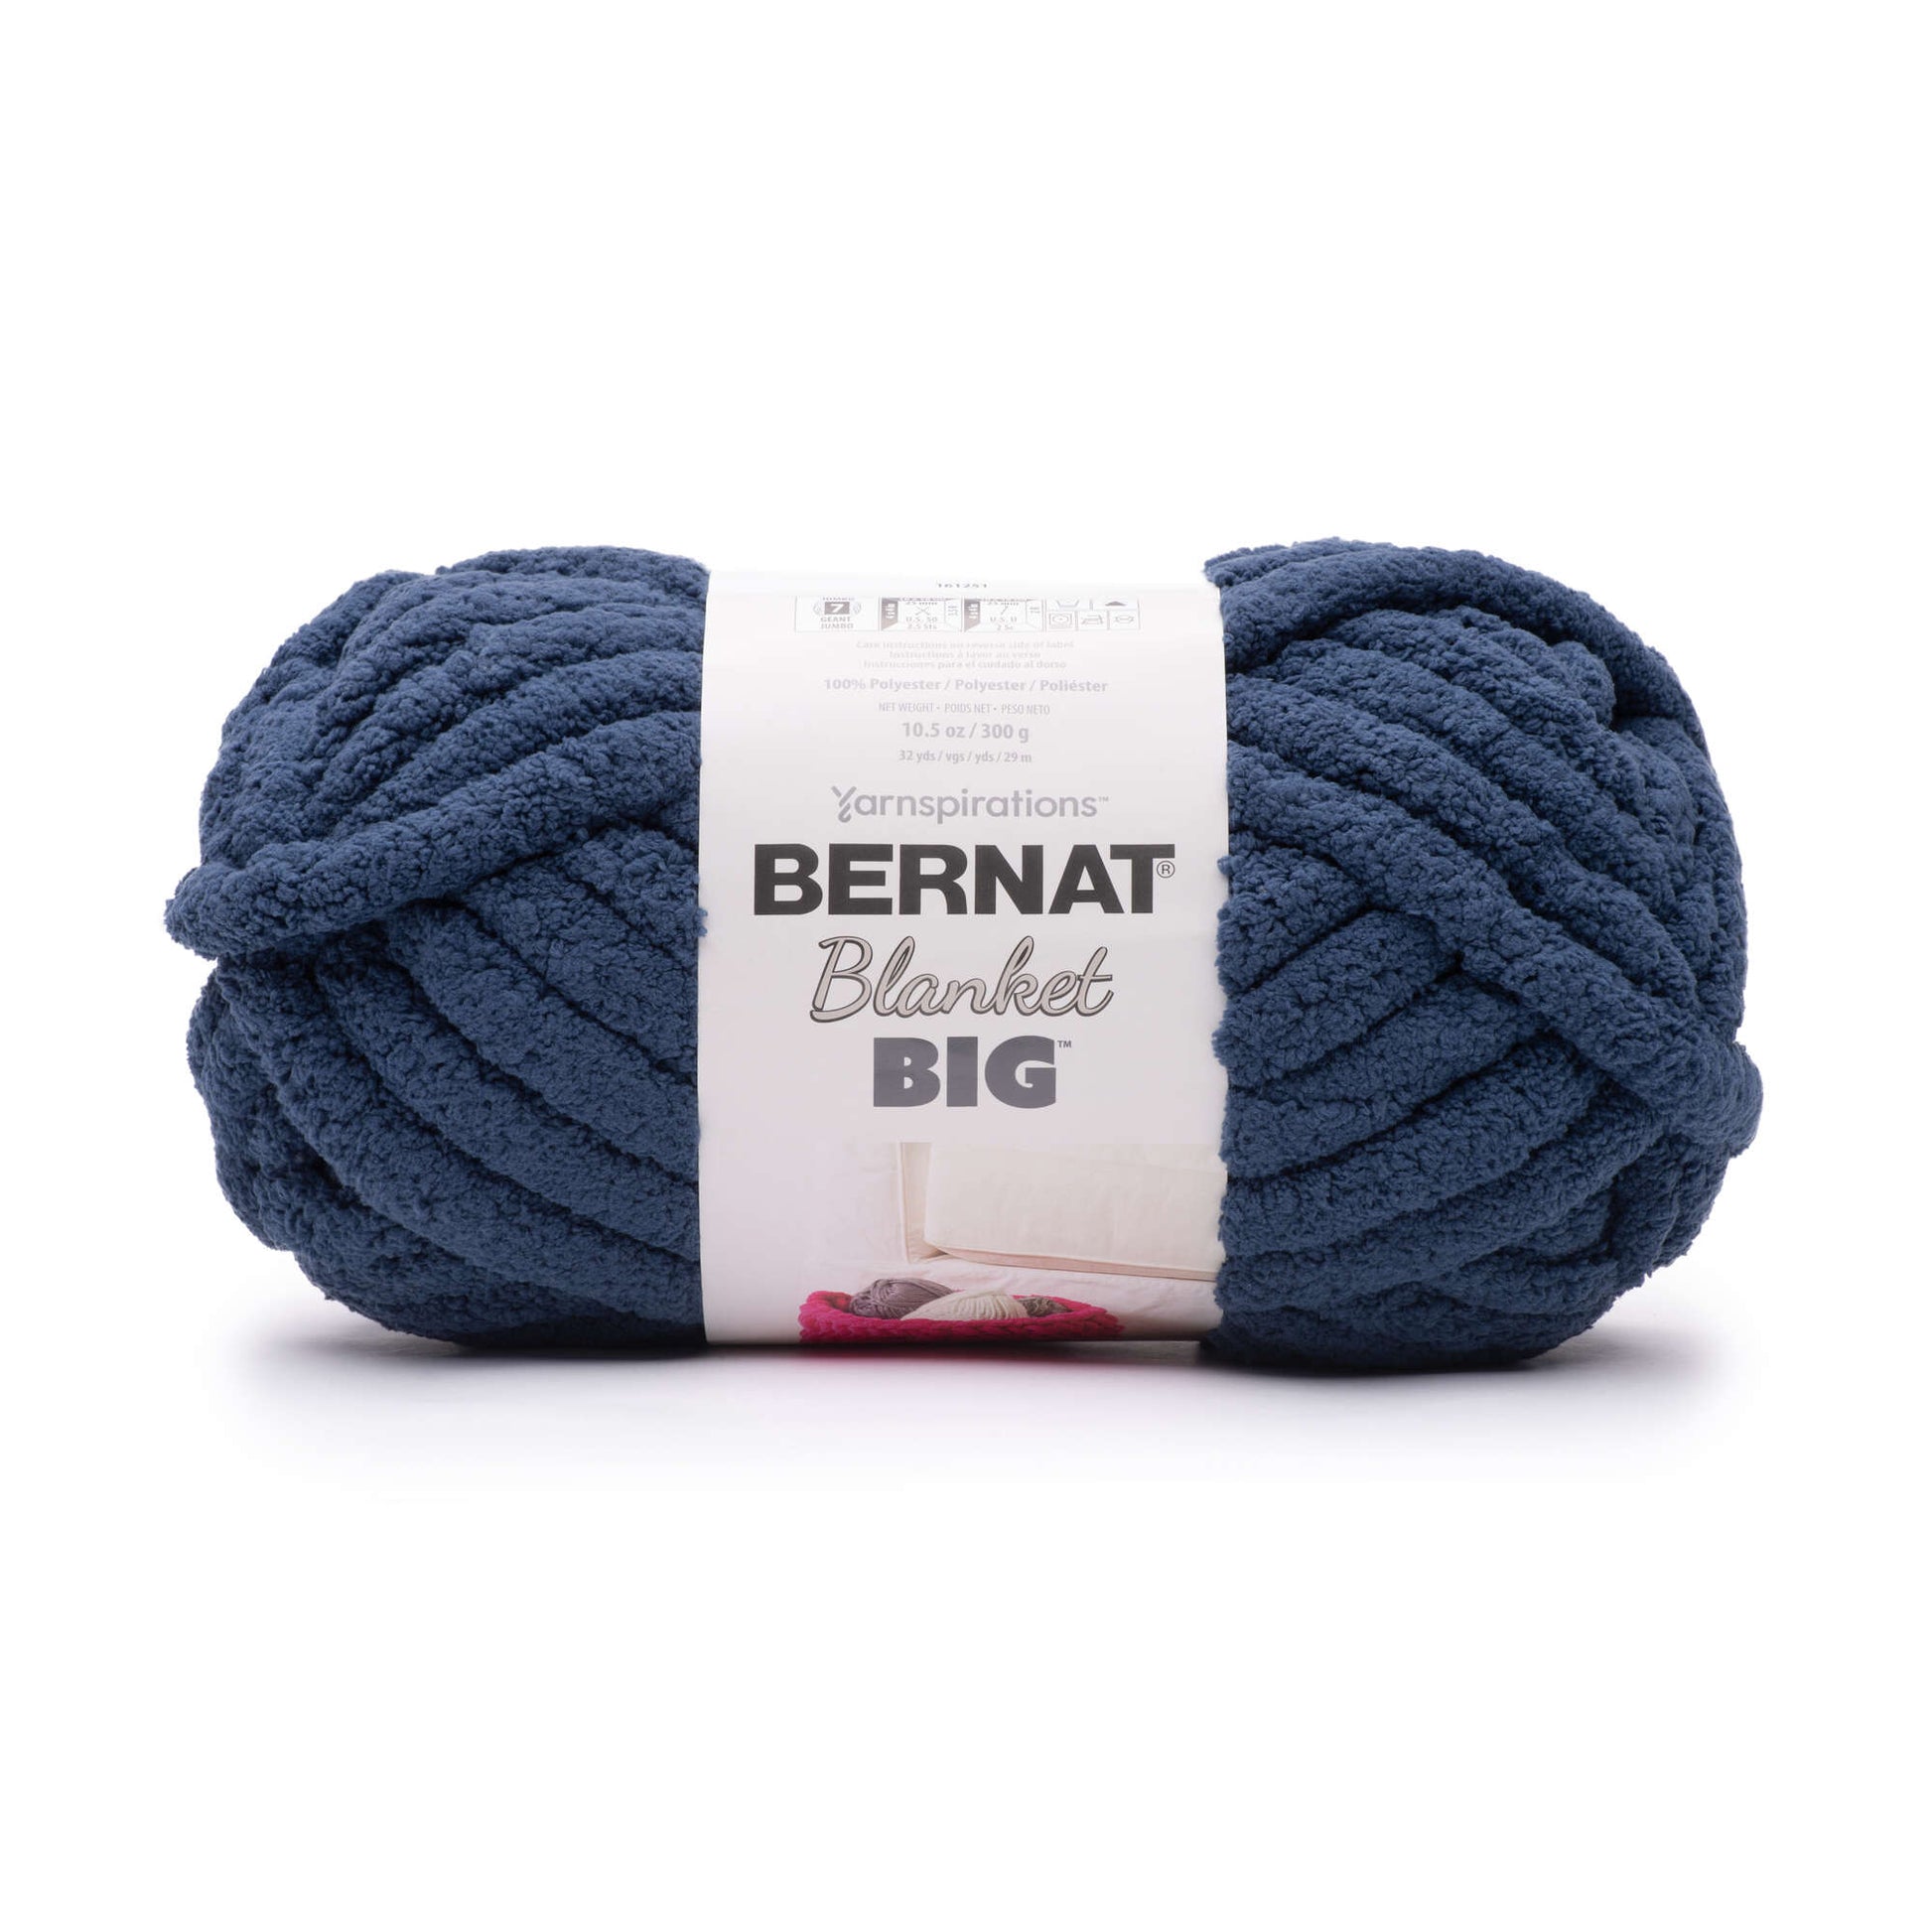 Bernat Blanket Big Yarn (300g/10.5oz) | Yarnspirations